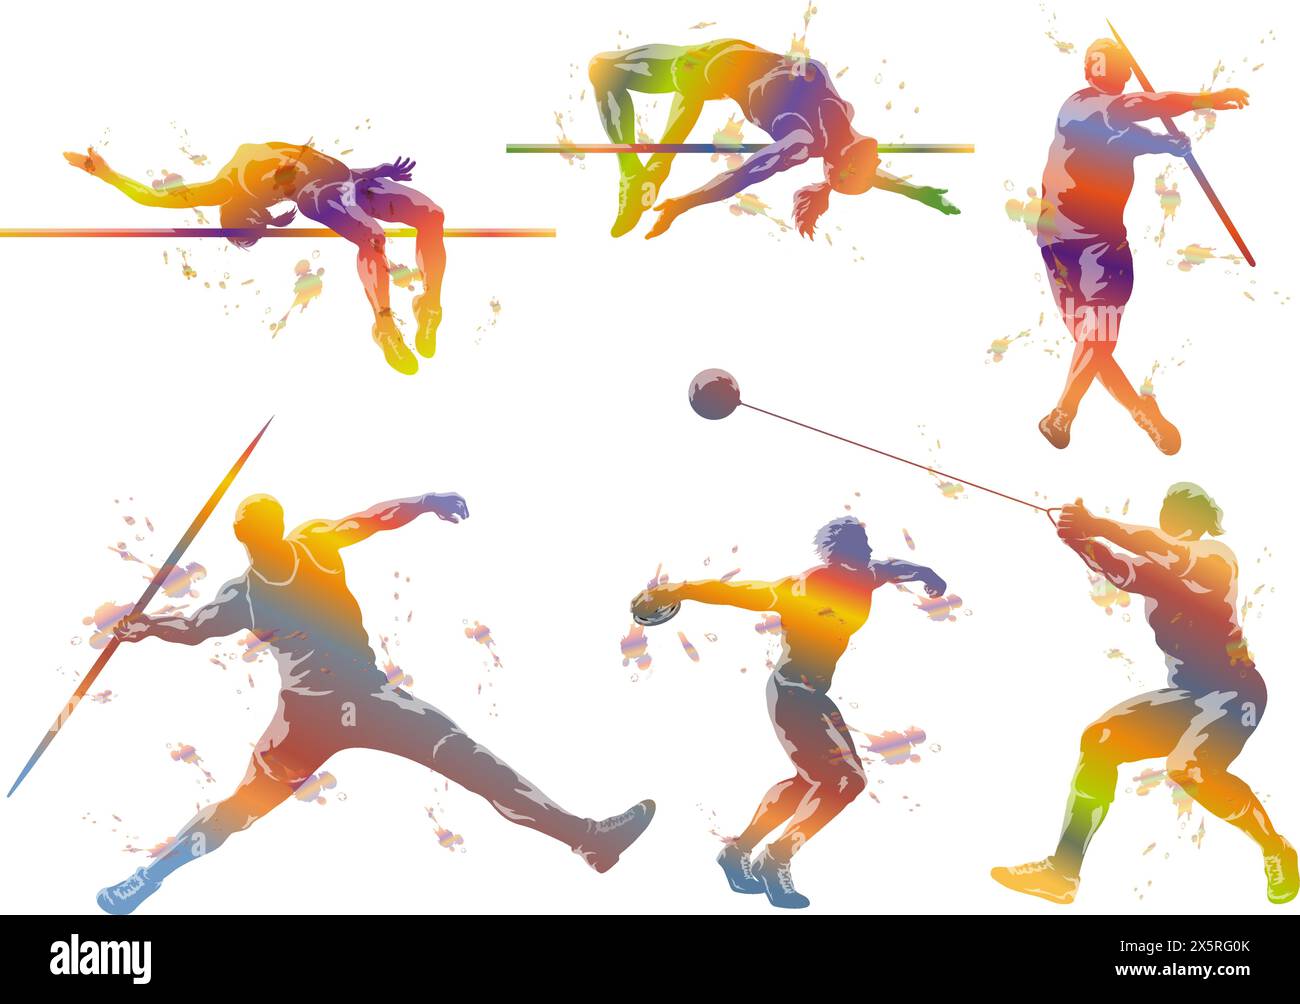 Vektor Track und Field Athleten Silhouette Illustration Set isoliert auf Einem weißen Hintergrund. Stock Vektor